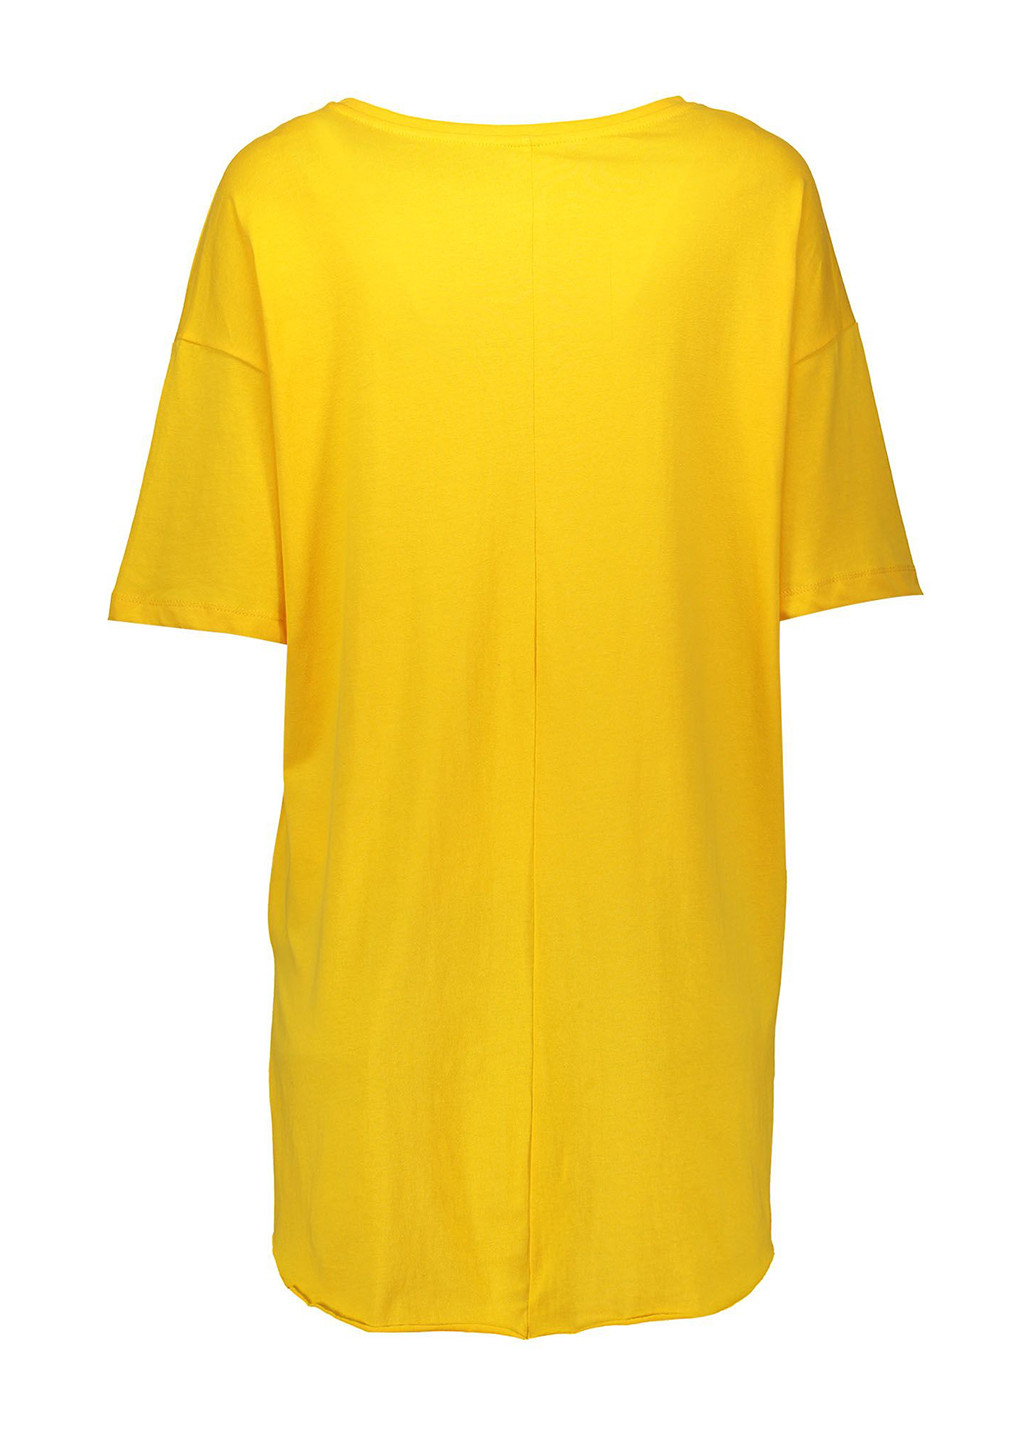 Желтая летняя футболка с коротким рукавом Piazza Italia